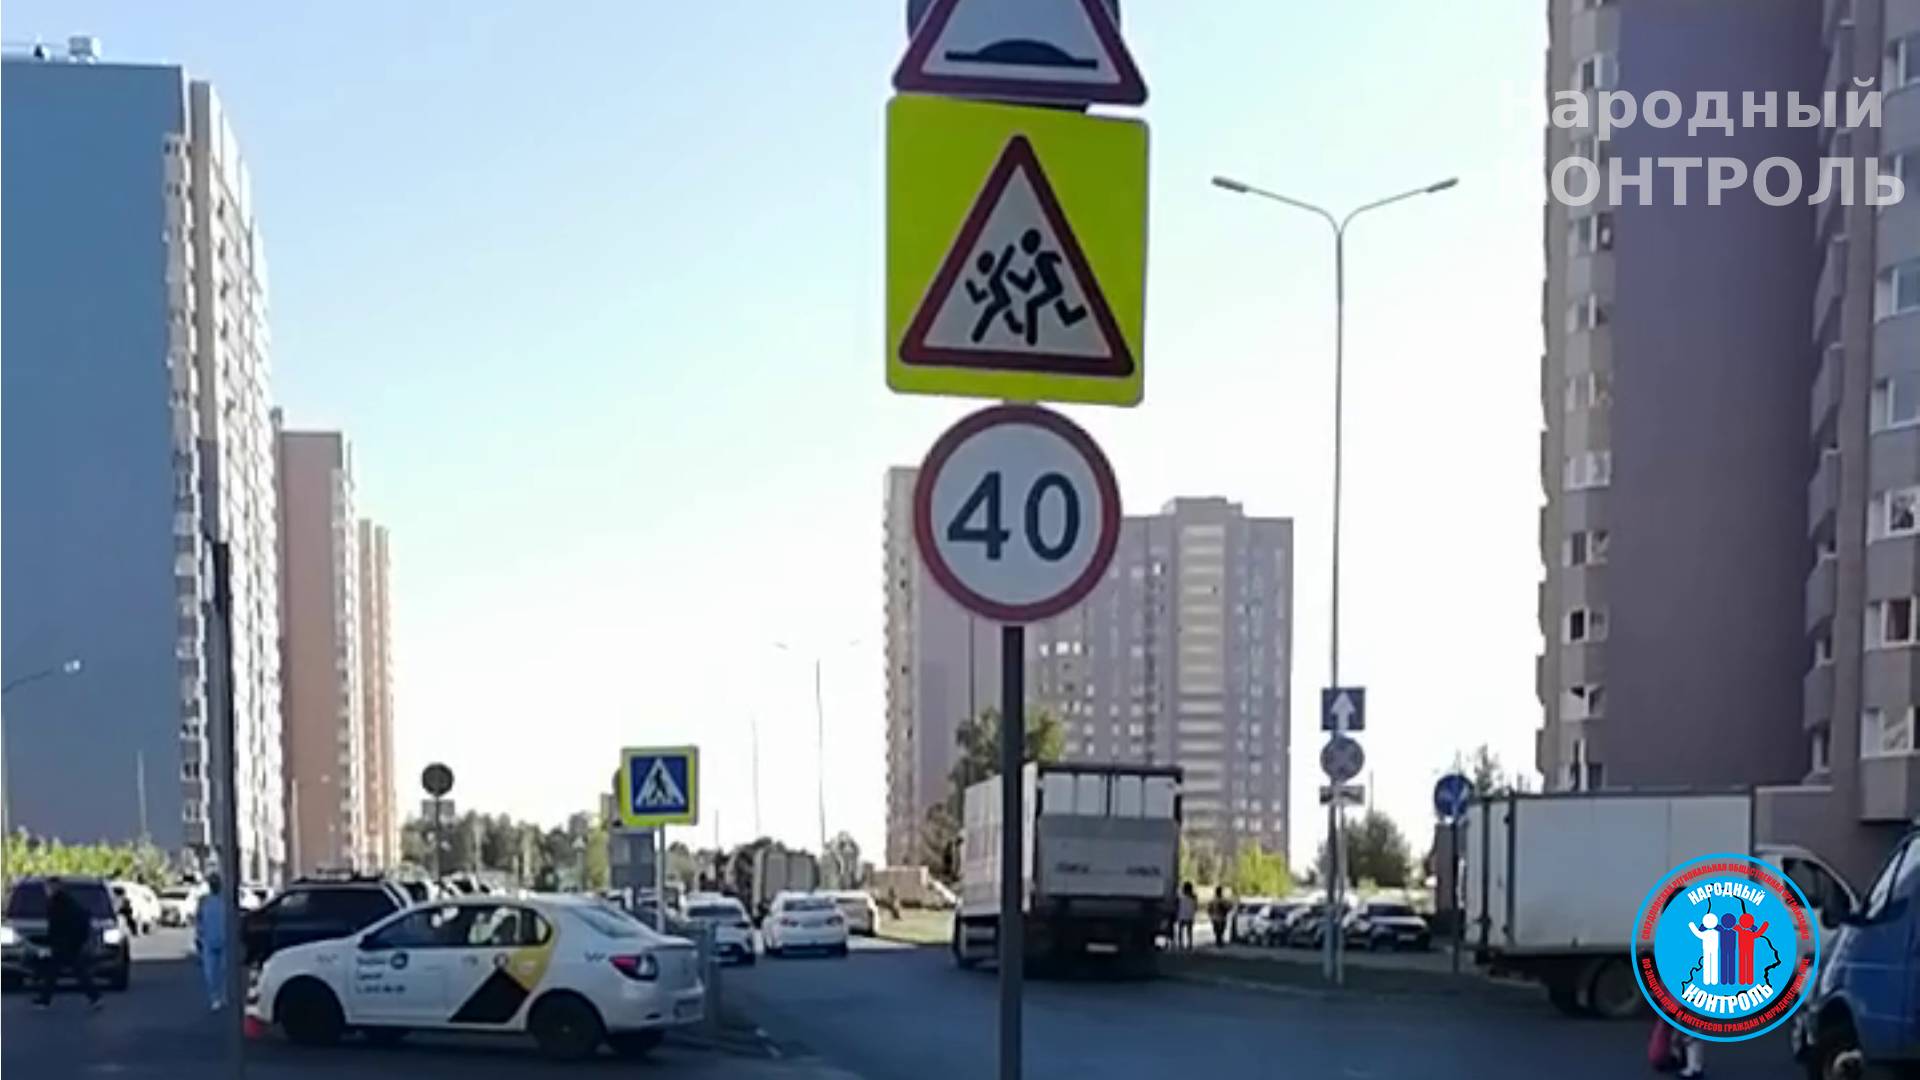 Установили дорожные знаки “пешеходный переход” и “искусственная неровность”, но ничего из вышеперечисленного на дороге нет